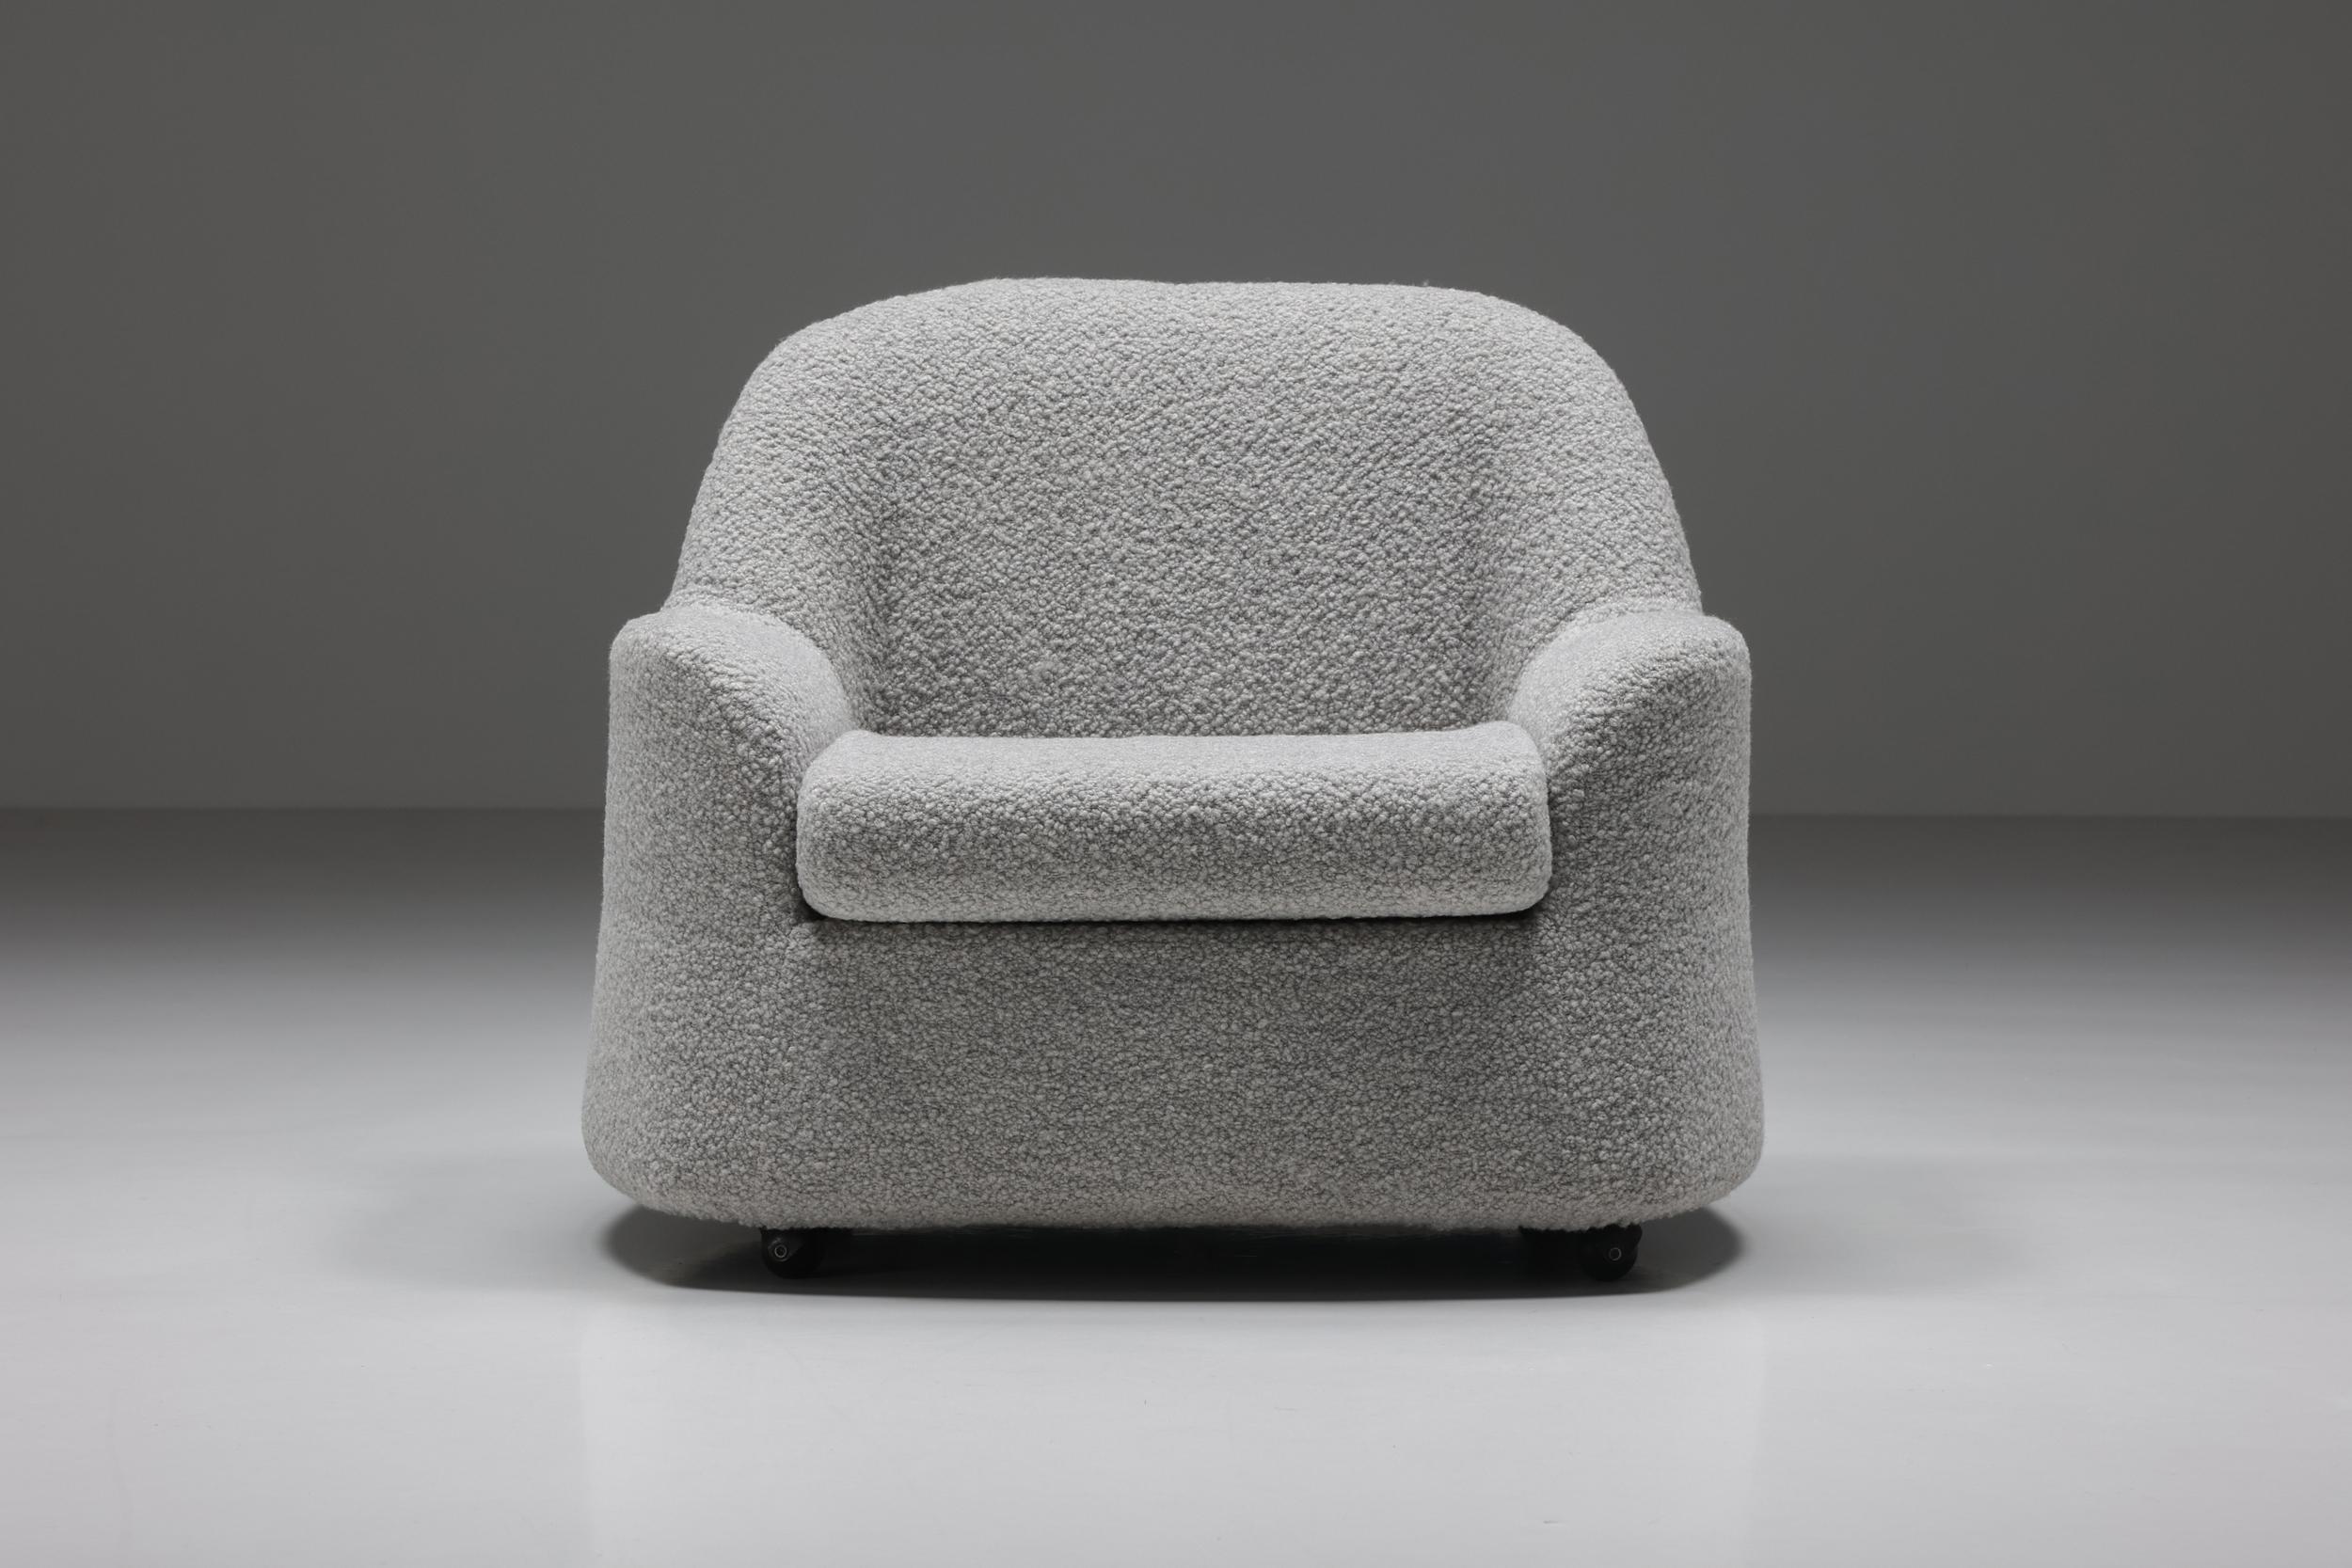 Chaise de salon Scarpa d'Afra & Tobia, tapissée de laine bouclée grise, conçue en Italie dans les années 1960. Une pièce rare dans l'œuvre italienne de Scarpa. Chaise longue confortable, en excellent état. Une pièce robuste mais élégante qui